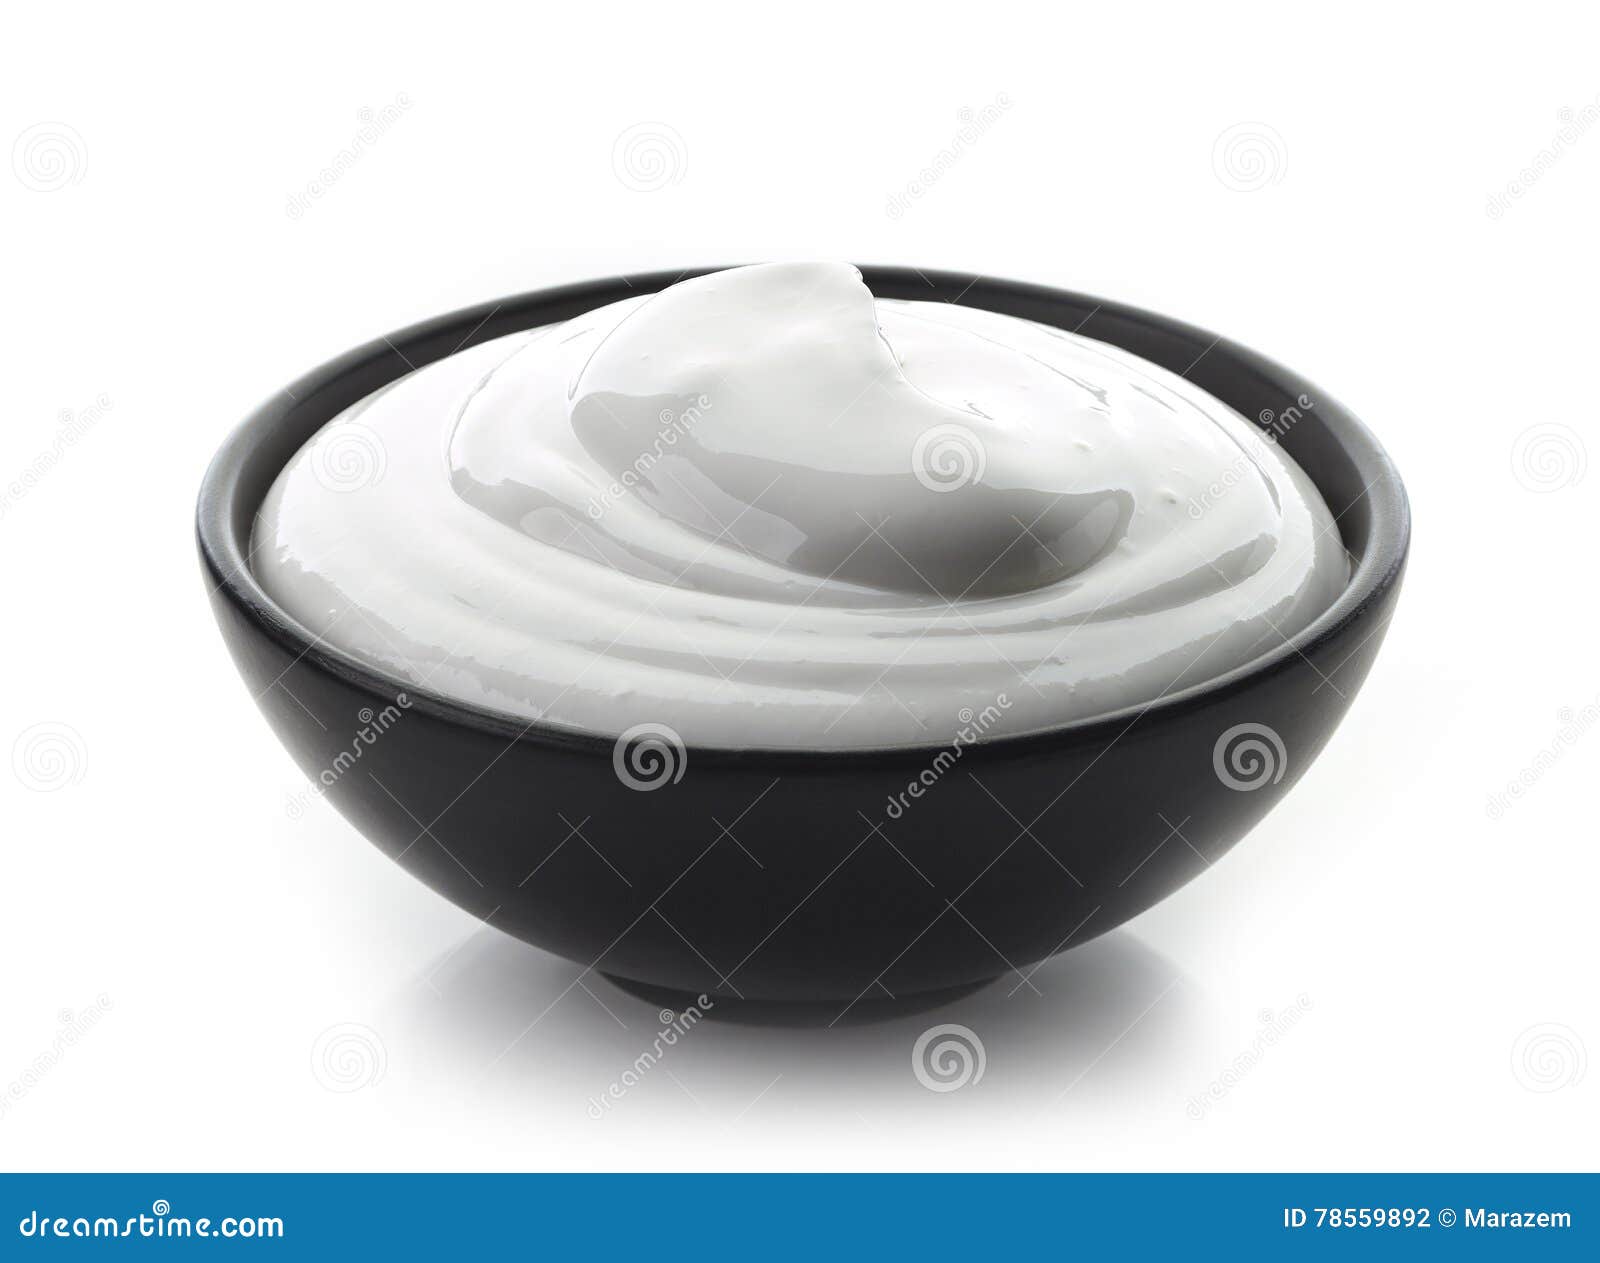 bowl of whipped egg whites